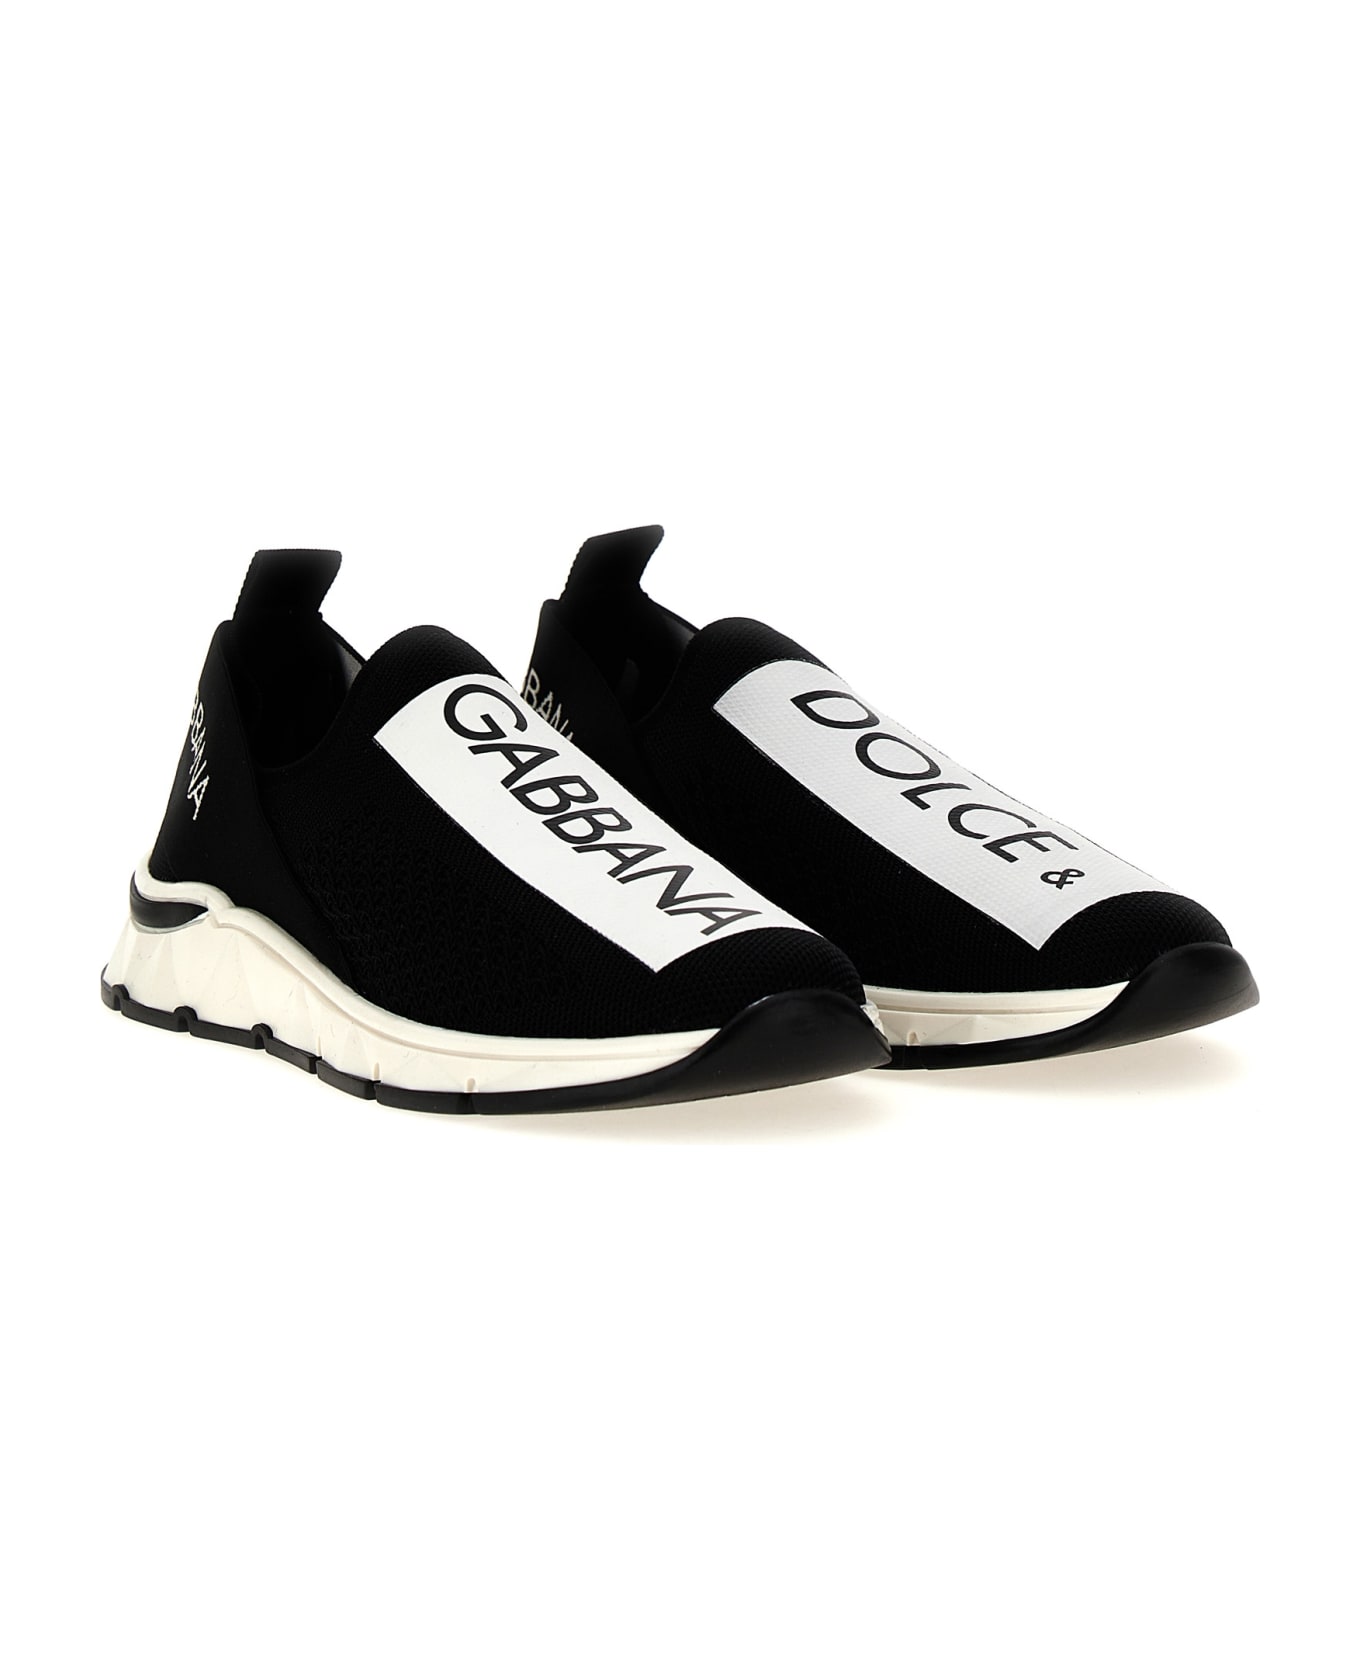 Dolce & Gabbana 'sorrento 2,0' Sneakers - White/Black